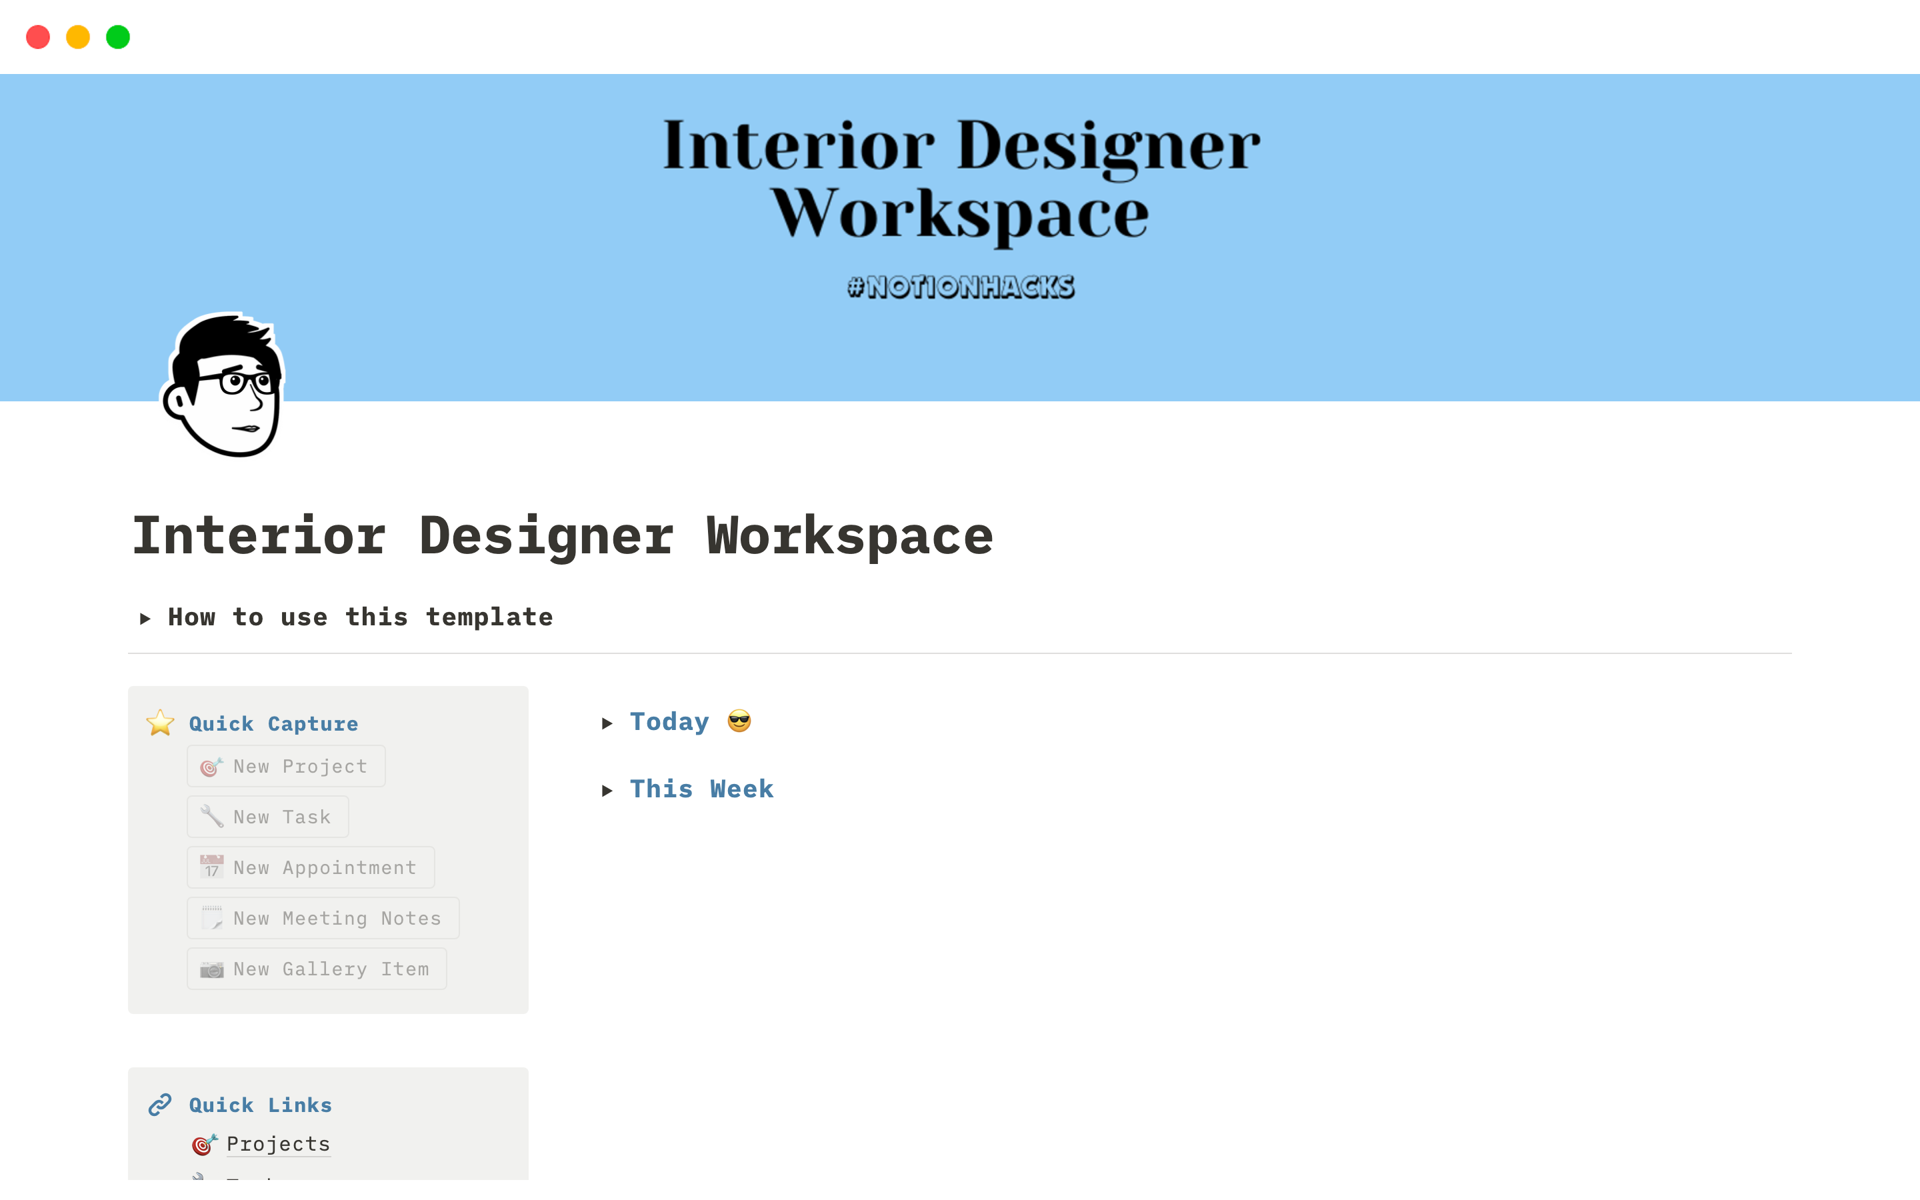 Vista previa de una plantilla para Interior Designer Workspace